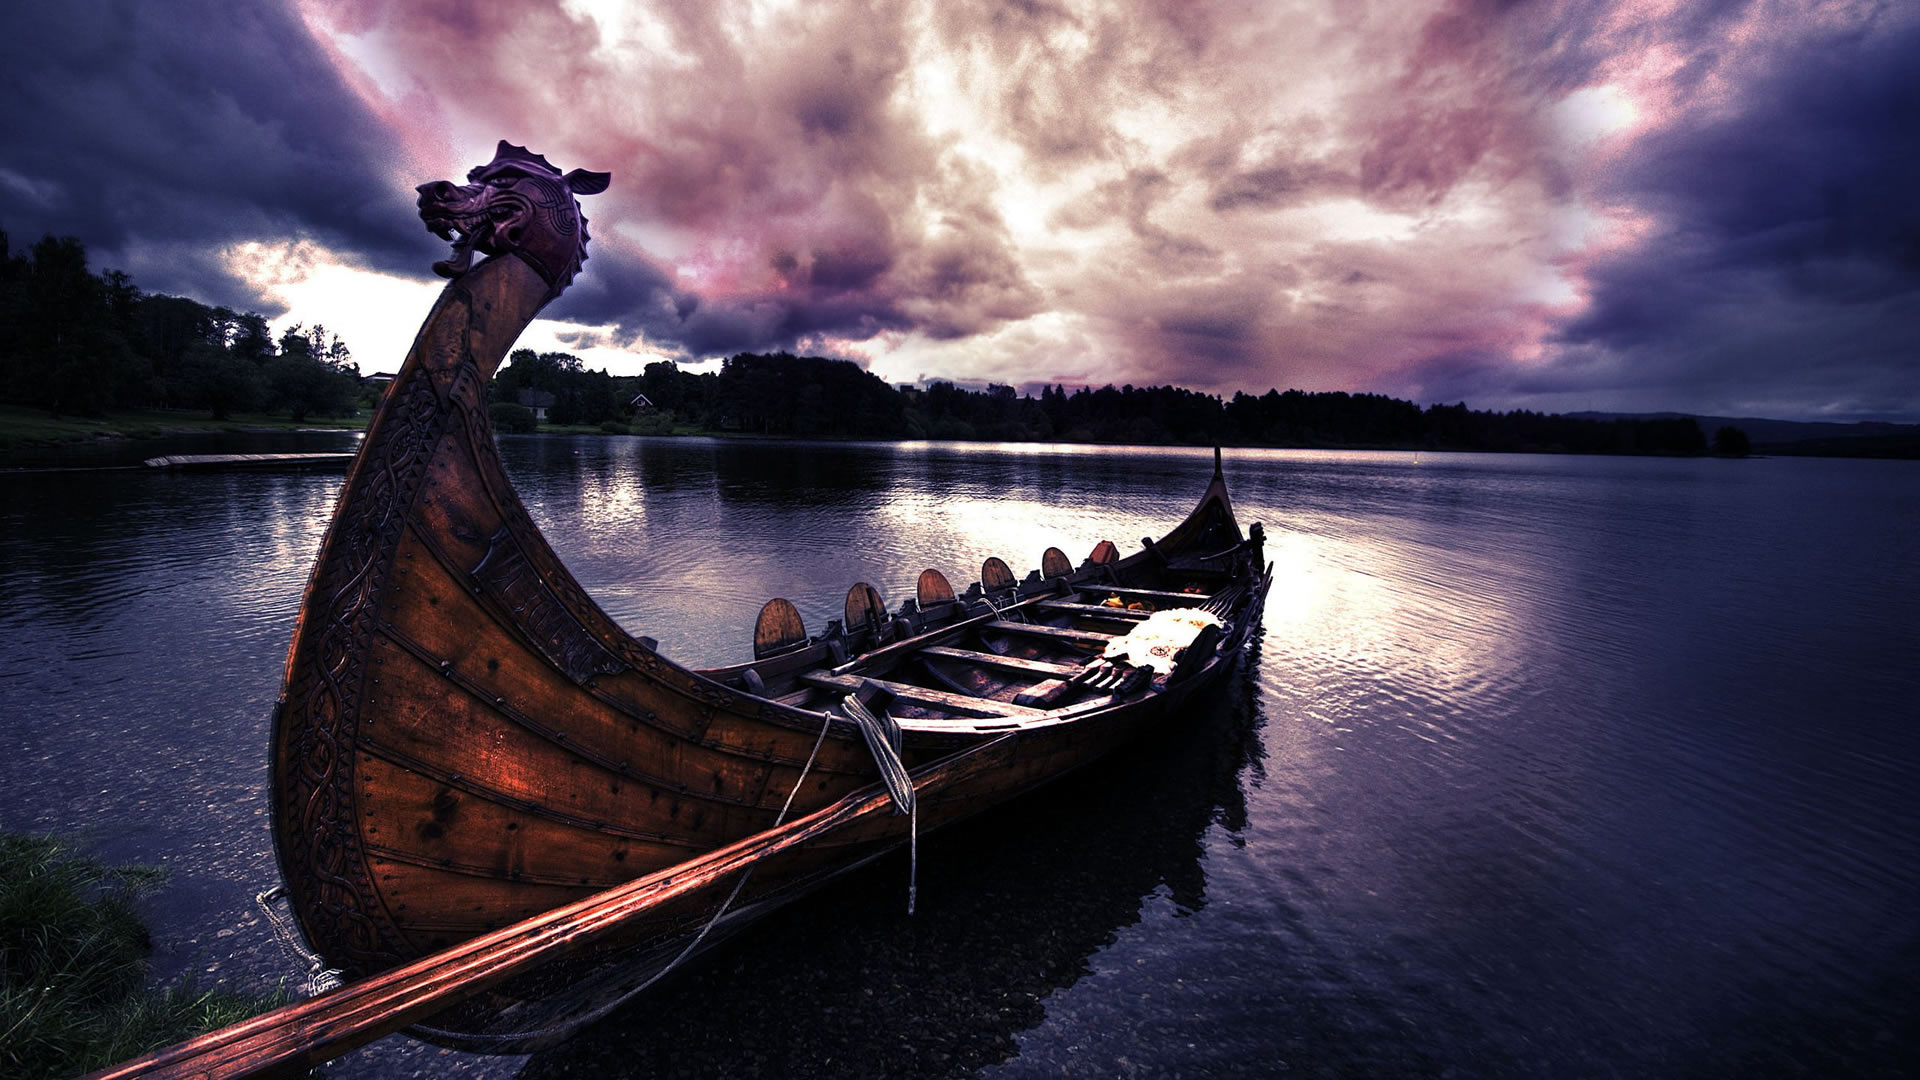 Hallazgo Vikingo: realizan descubrimiento en Noruega que reescribe la historia